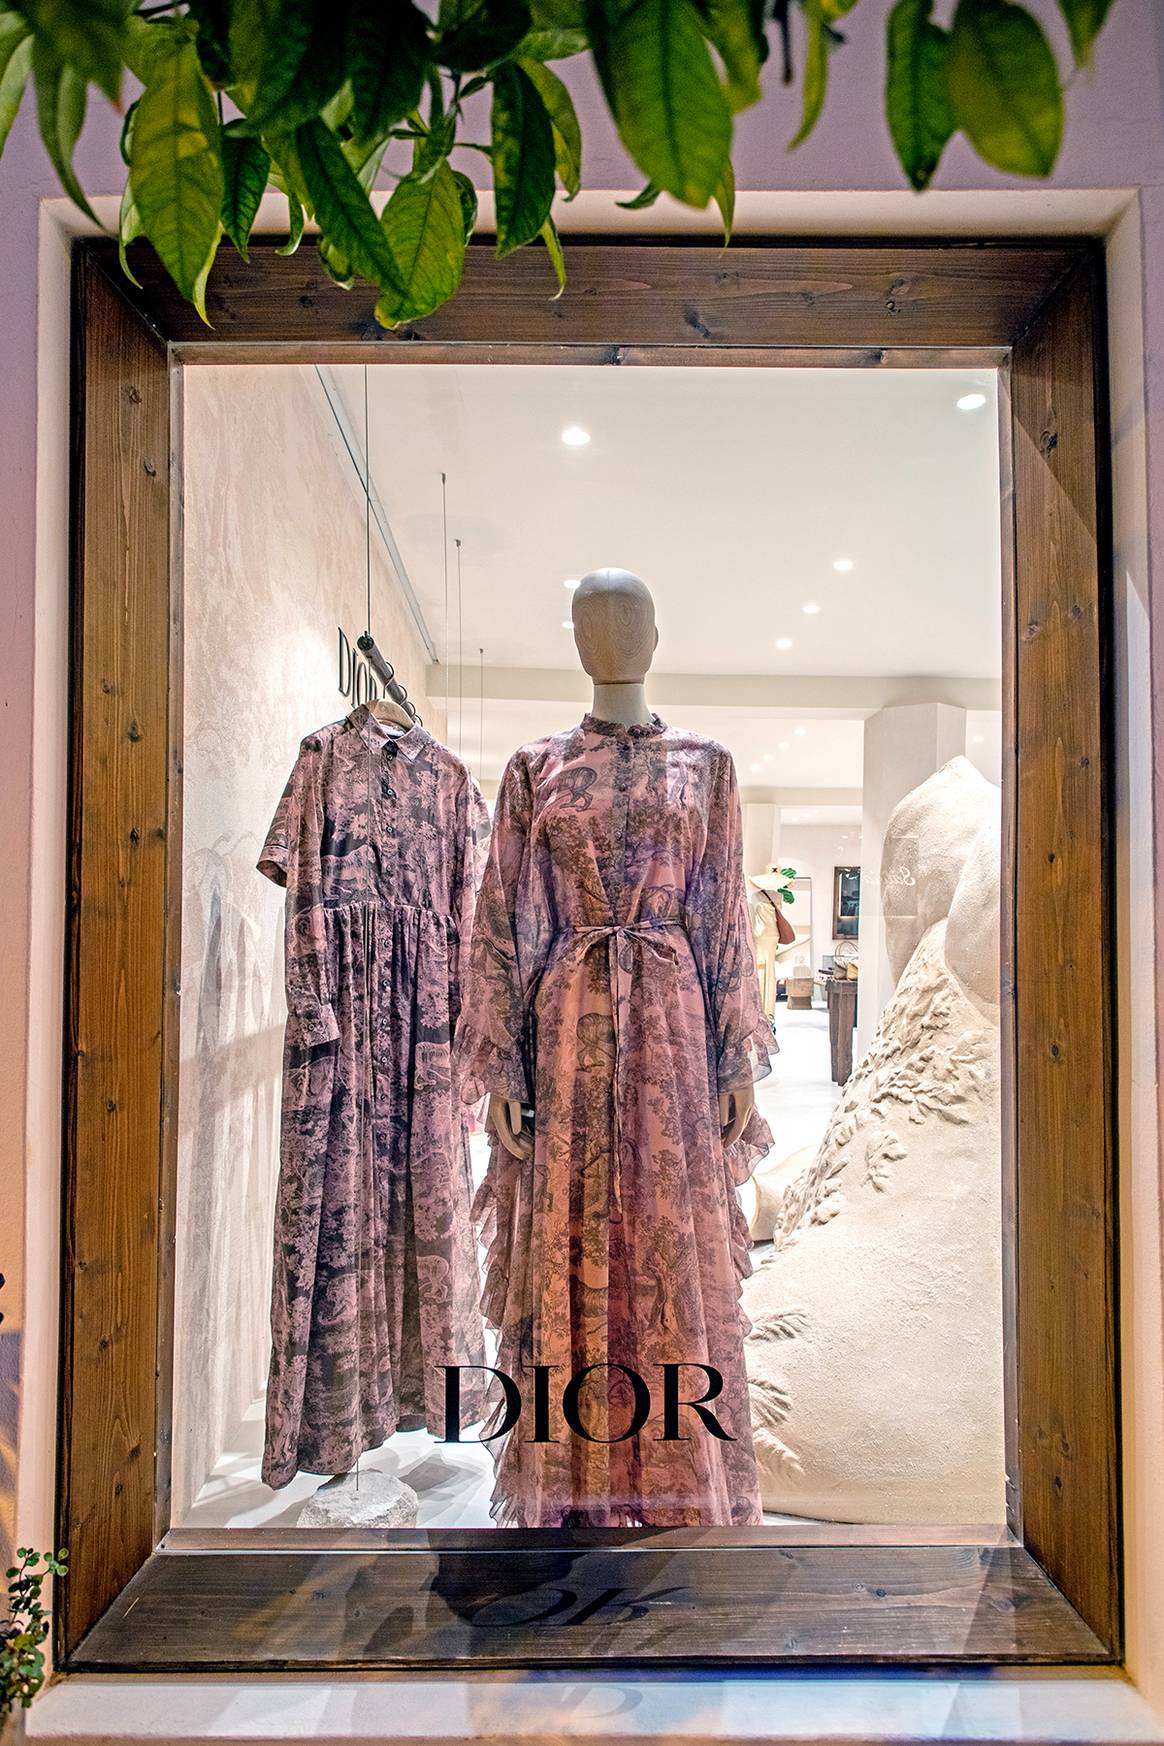 Créditos: Nueva tienda pop-up de Dior en la localidad de San Francisco Javier de Formentera. Fotografía de Bendetta Chiala, por cortesía de Dior.